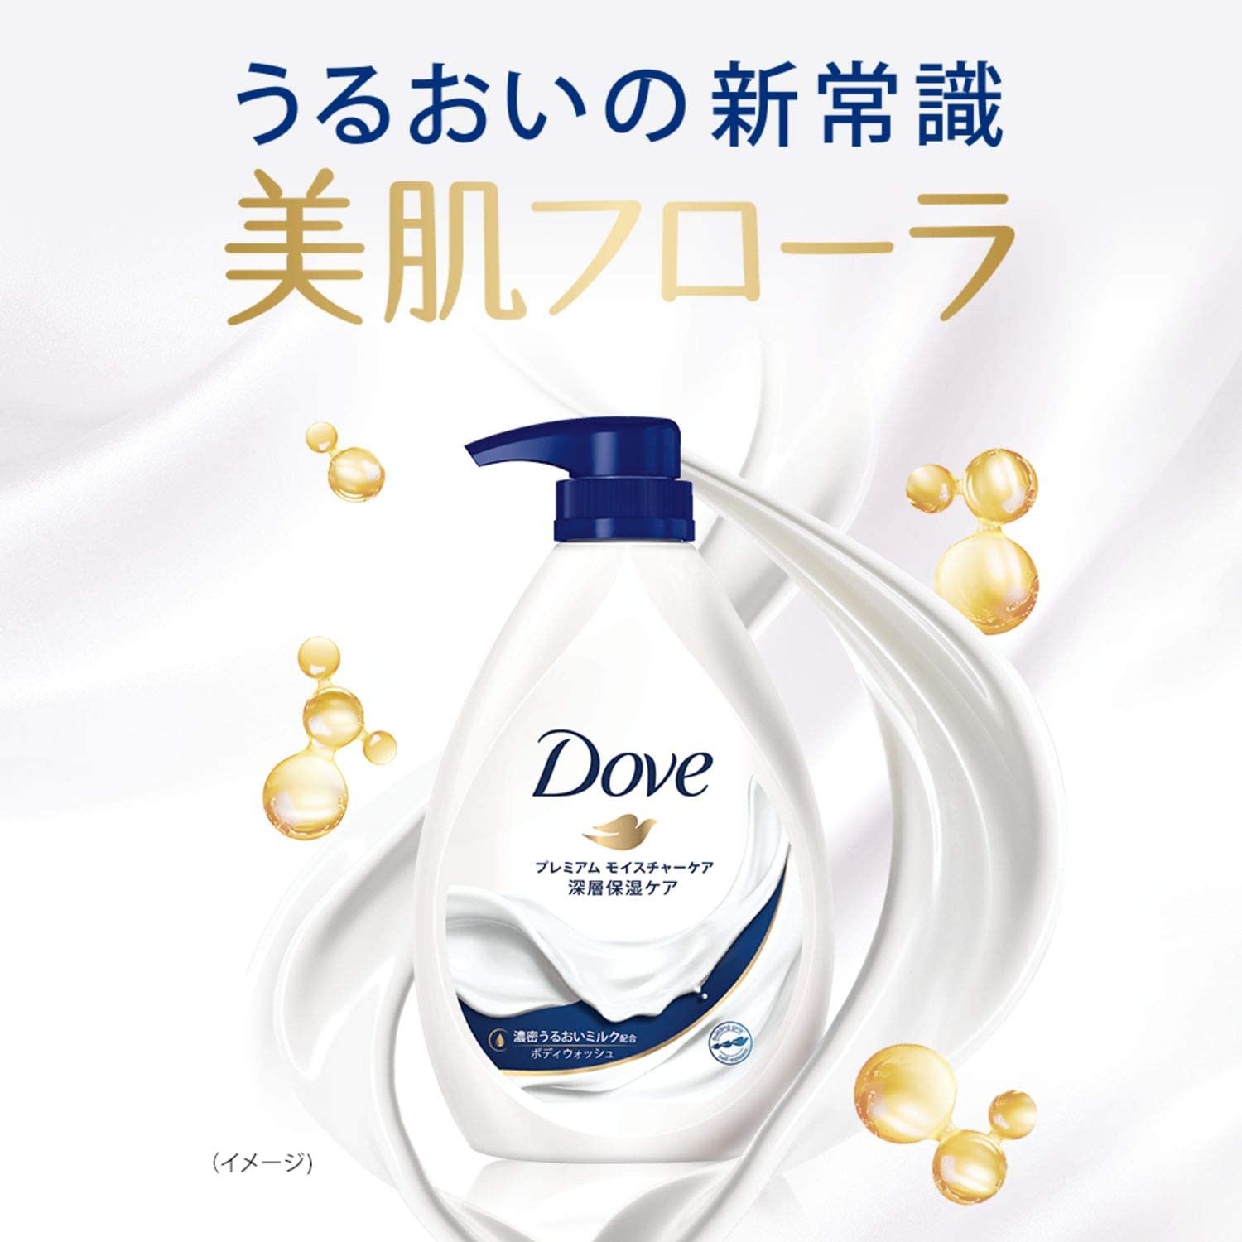 Dove(ダヴ) ボディウォッシュ プレミアム モイスチャーケアの商品画像サムネ3 